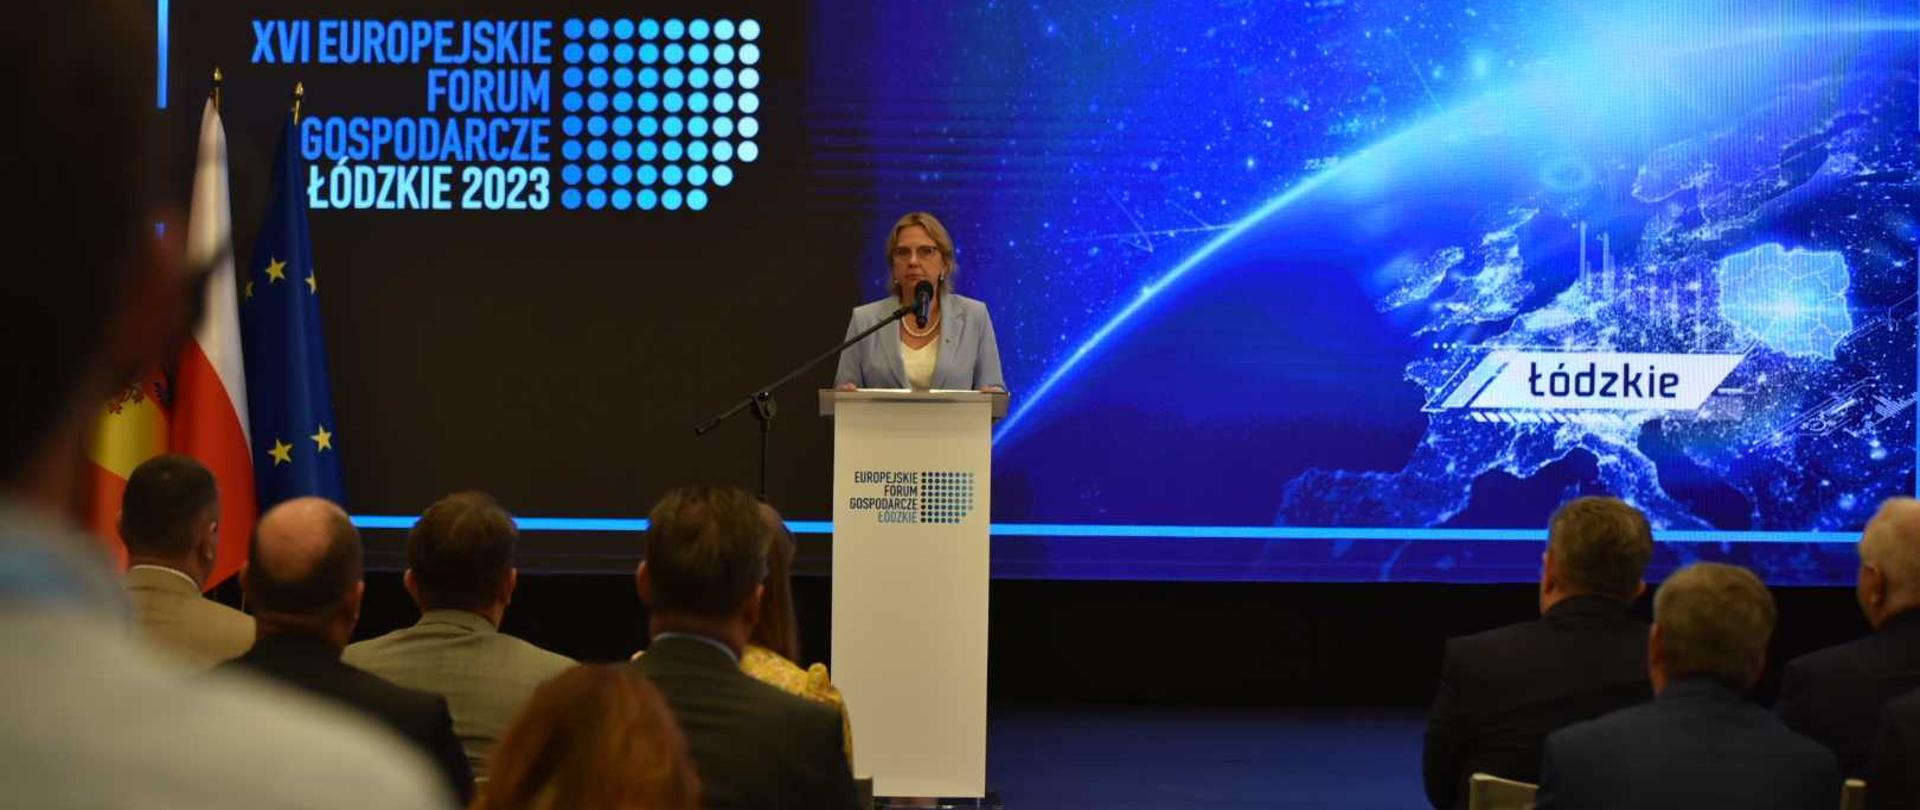 Minister klimatu i środowiska Anna Moskwa podczas XVI Europejskiego Forum Gospodarczego – Łódzkie 2023.